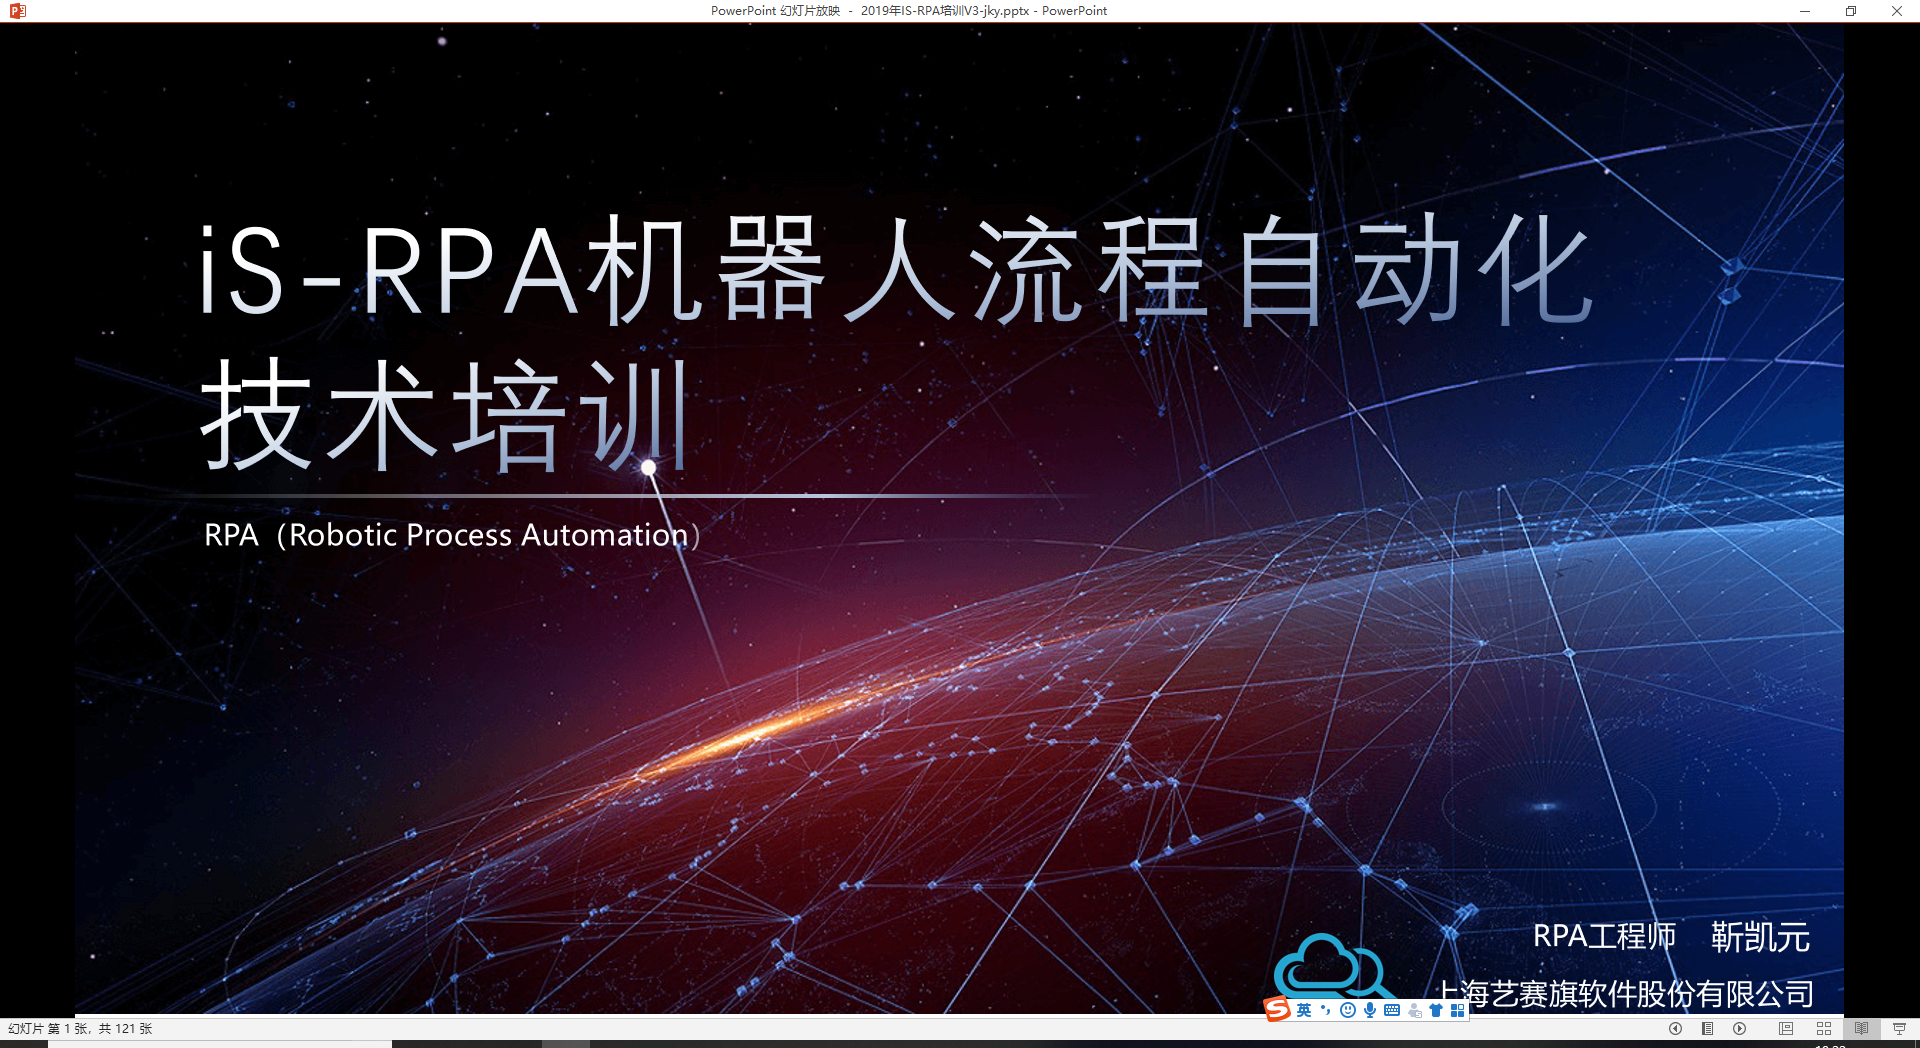 iS-RPA 技术认证培训 深圳 20190515 班 - 培训完成